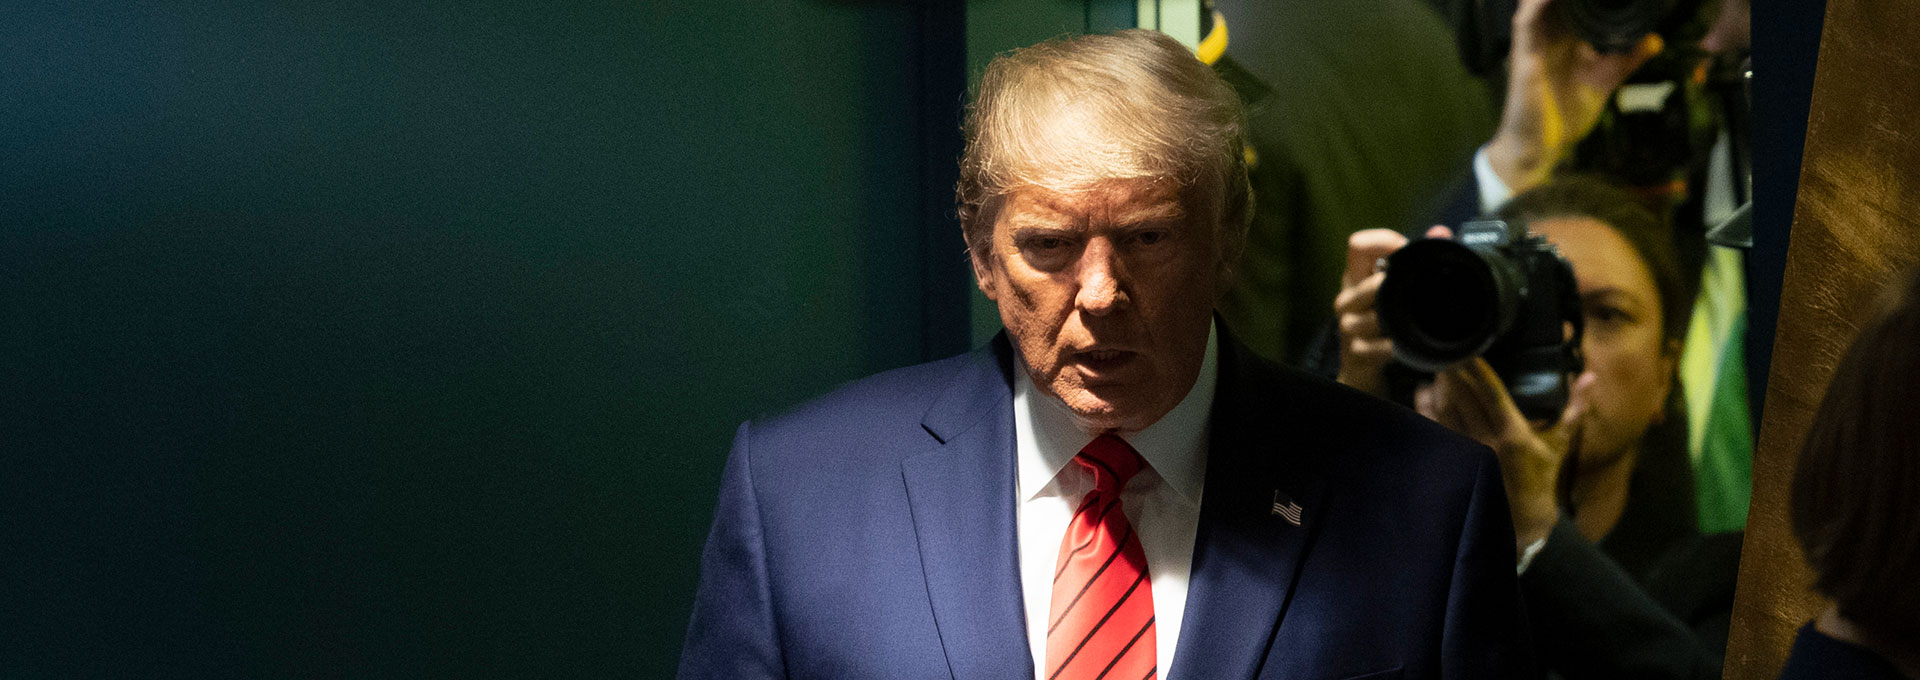 Historia de un ‘impeachment’: claves del proceso que puede acabar con Trump